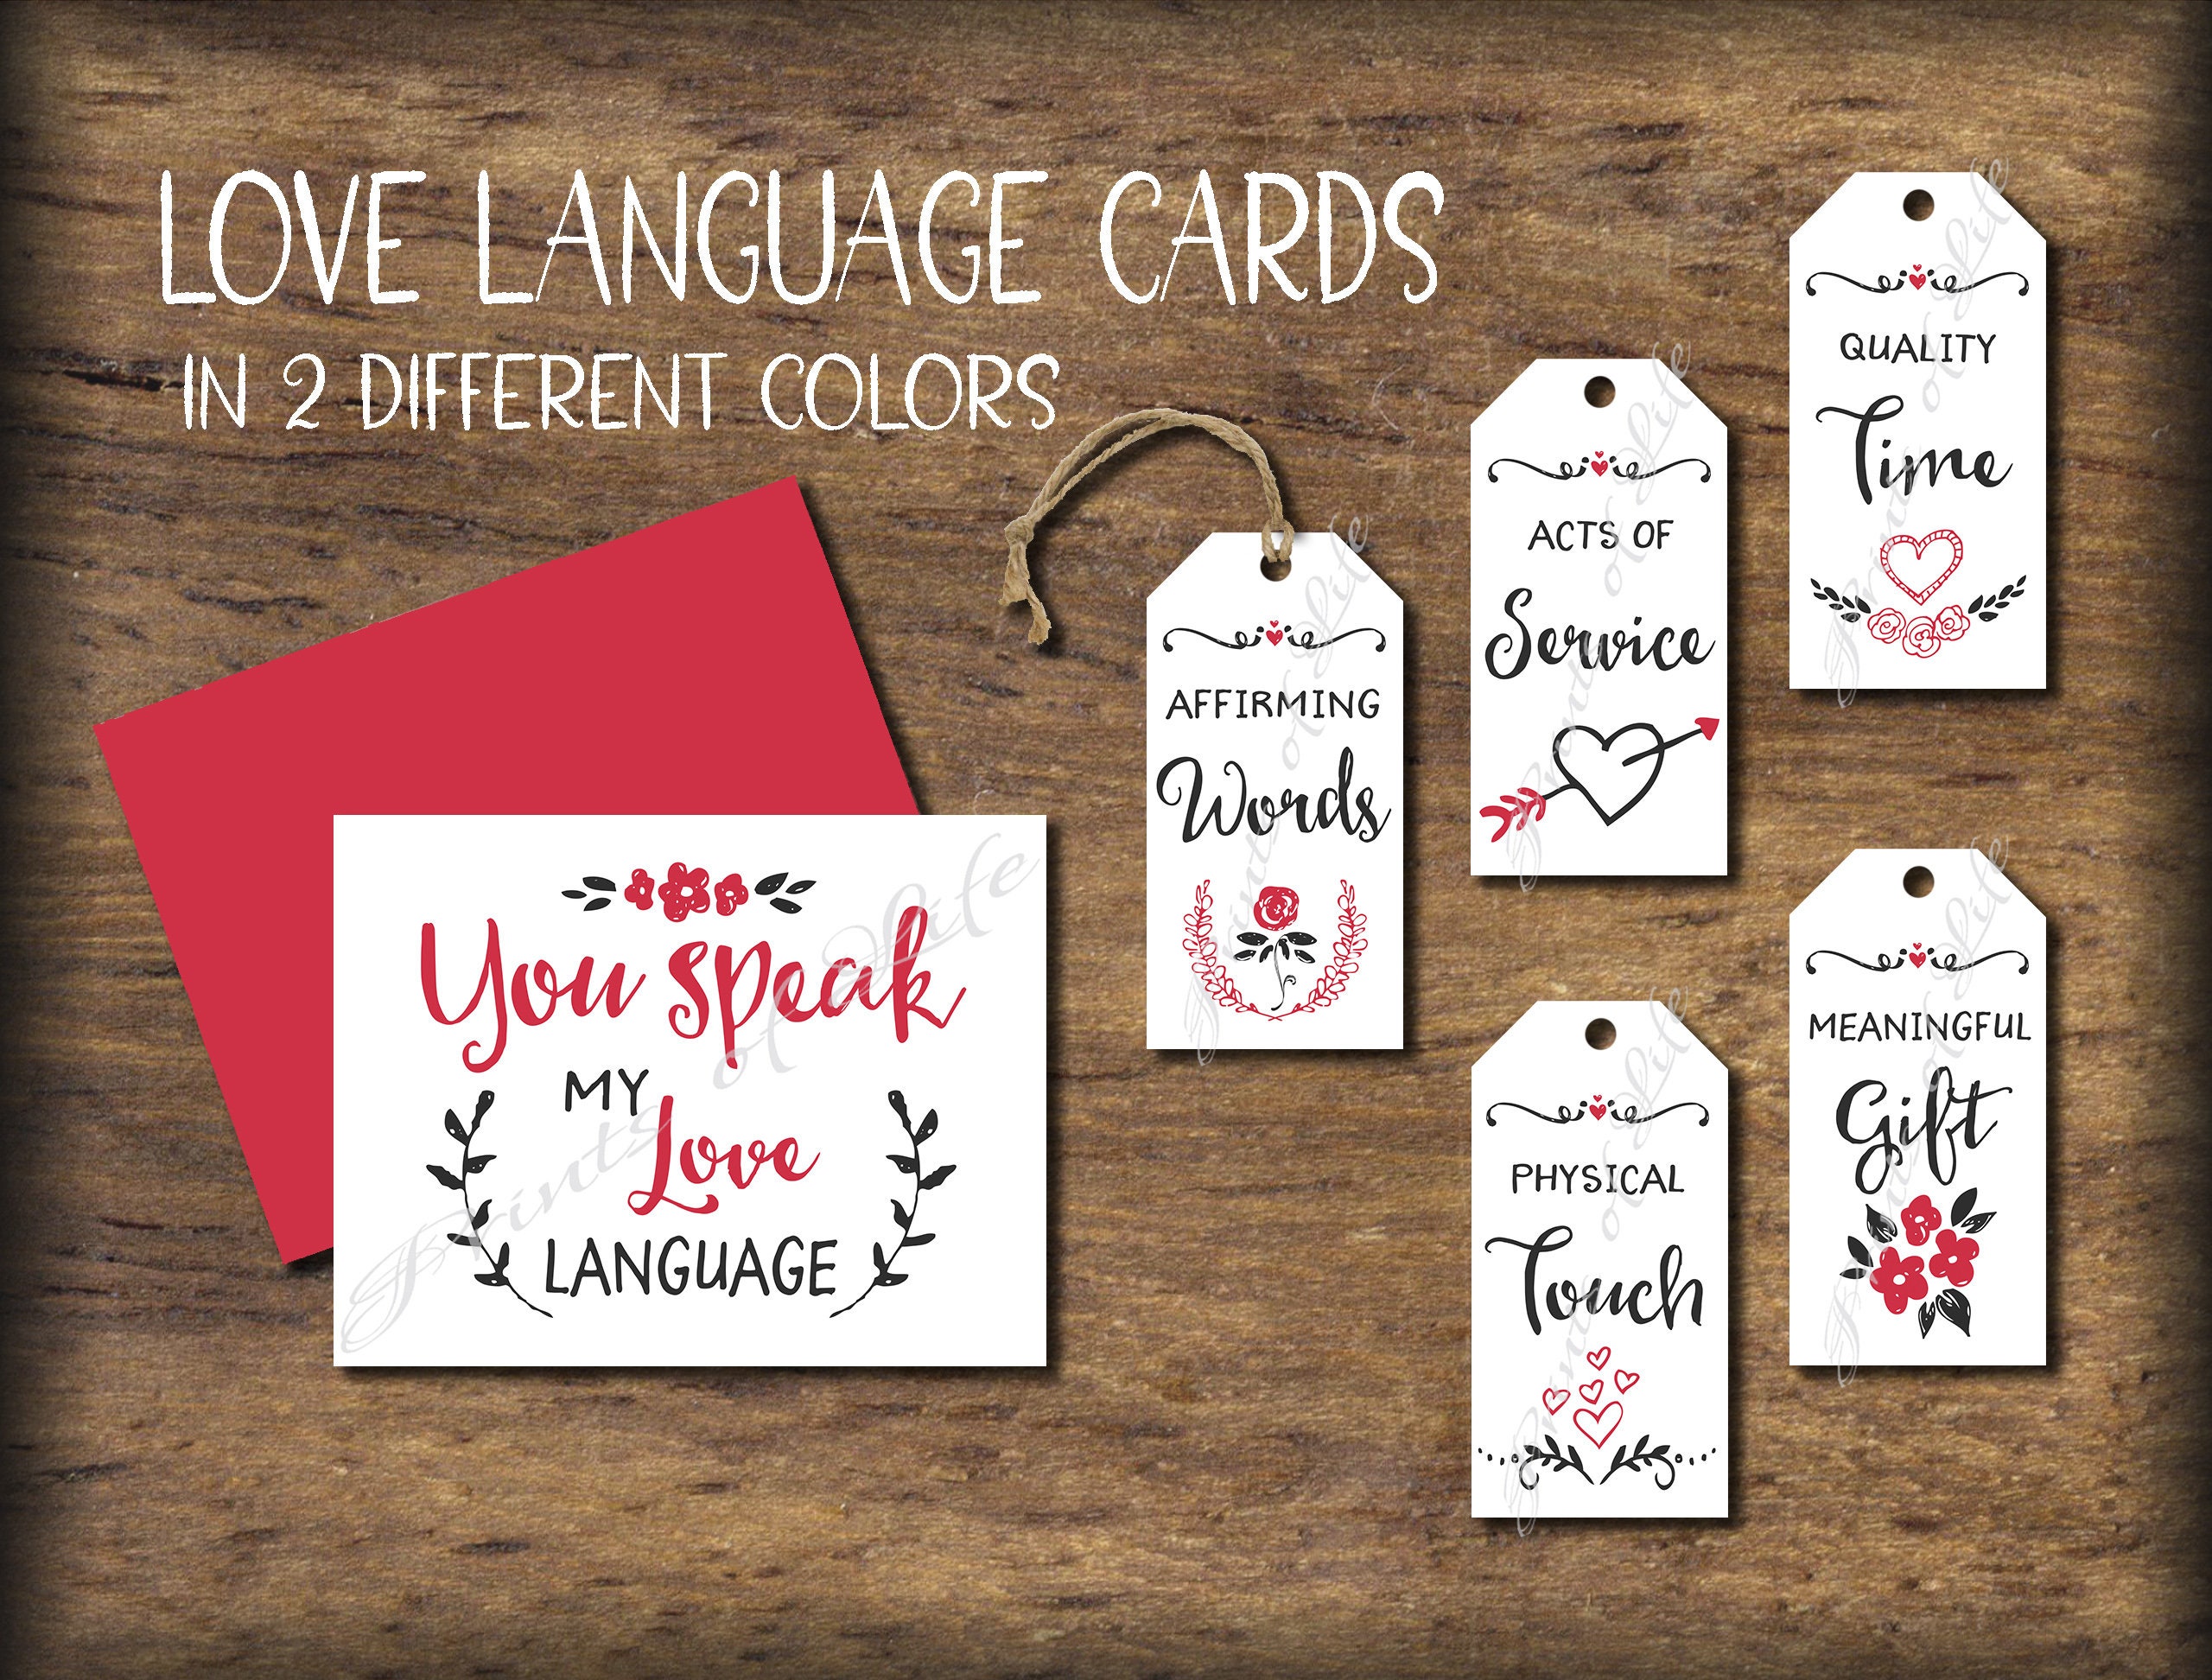 Gift giving is my love language 💕✨ #scrapbook #5yearanniversary